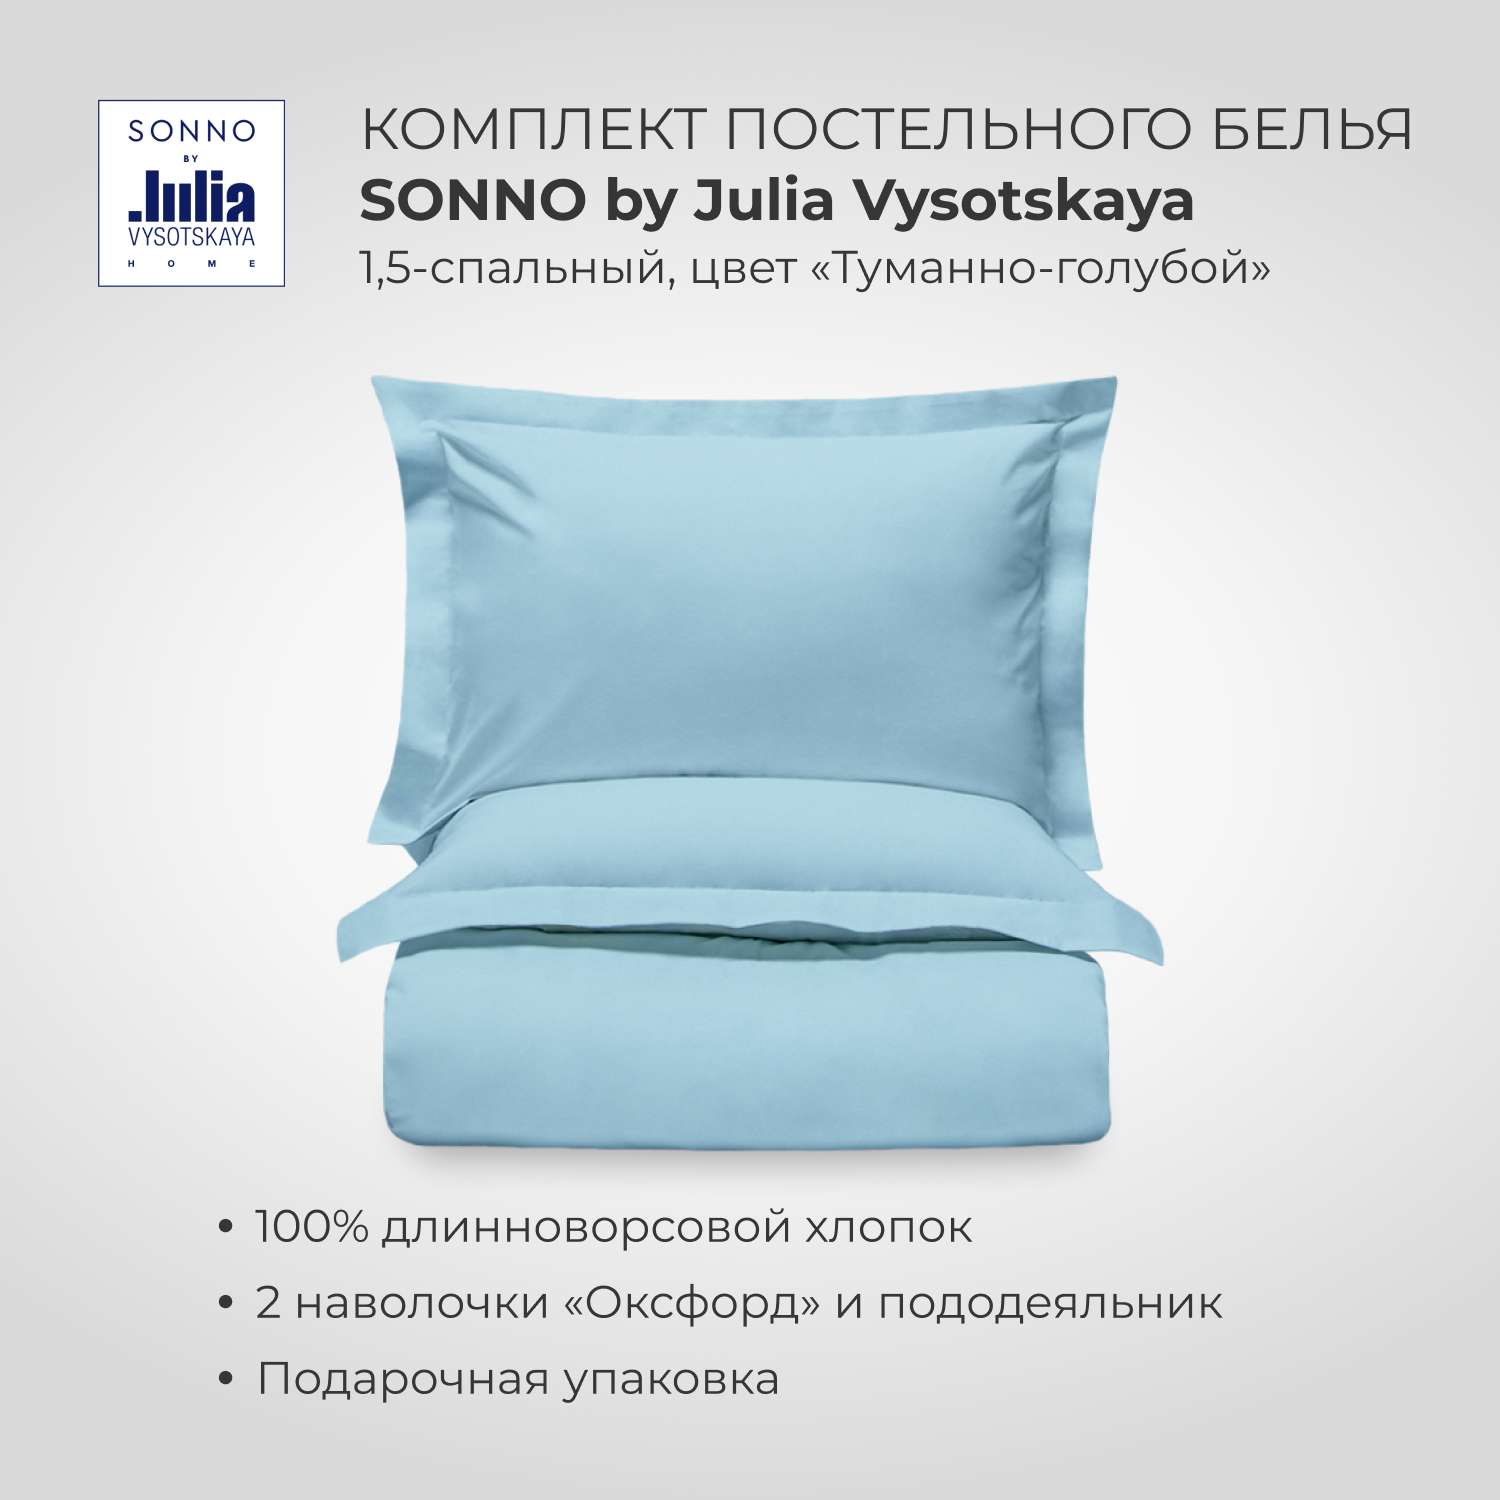 Комплект постельного белья SONNO by Julia Vysotskaya 1.5-спальный Цвет Туманно-голубой - фото 1